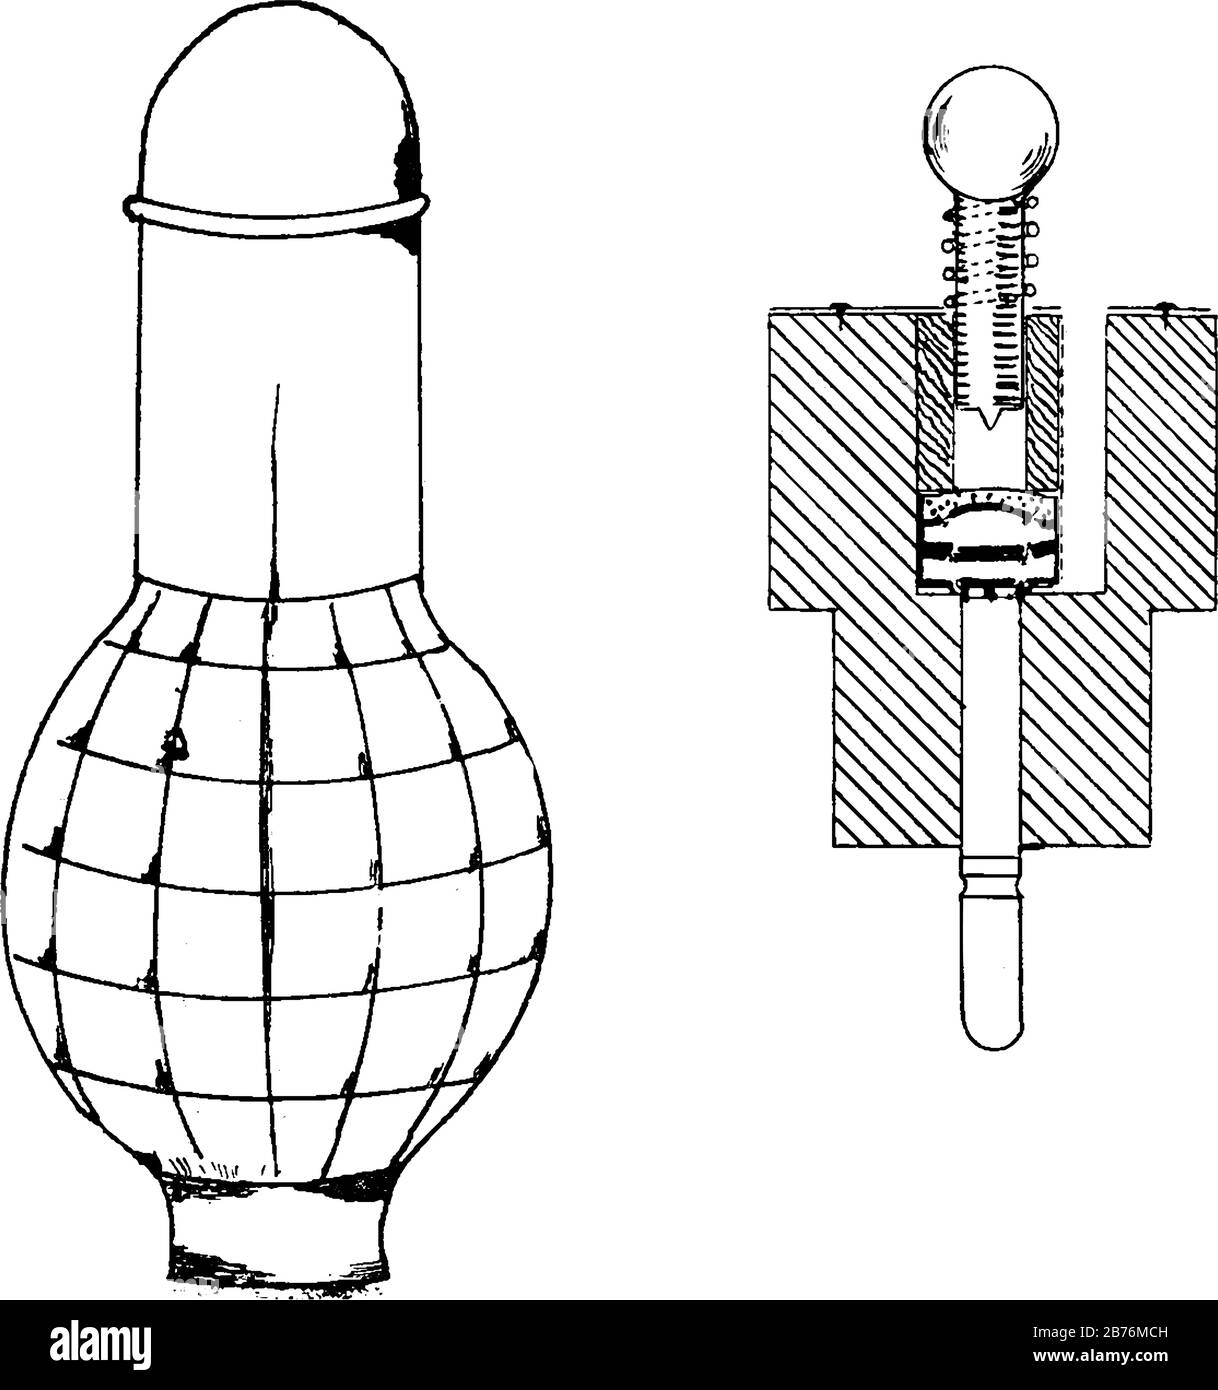 Grenade qui a trois parties, un corps en fonte en forme de citron, dentelé,  un ignître spécial fixé par trois épingles en bois dans le collier de la  grenade et Image Vectorielle